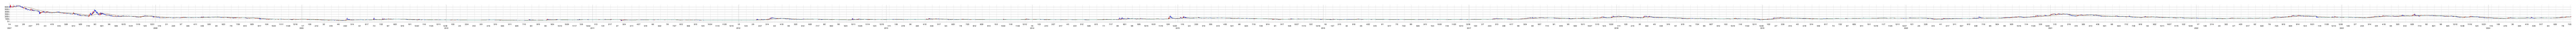 ジェクシードの株価チャート